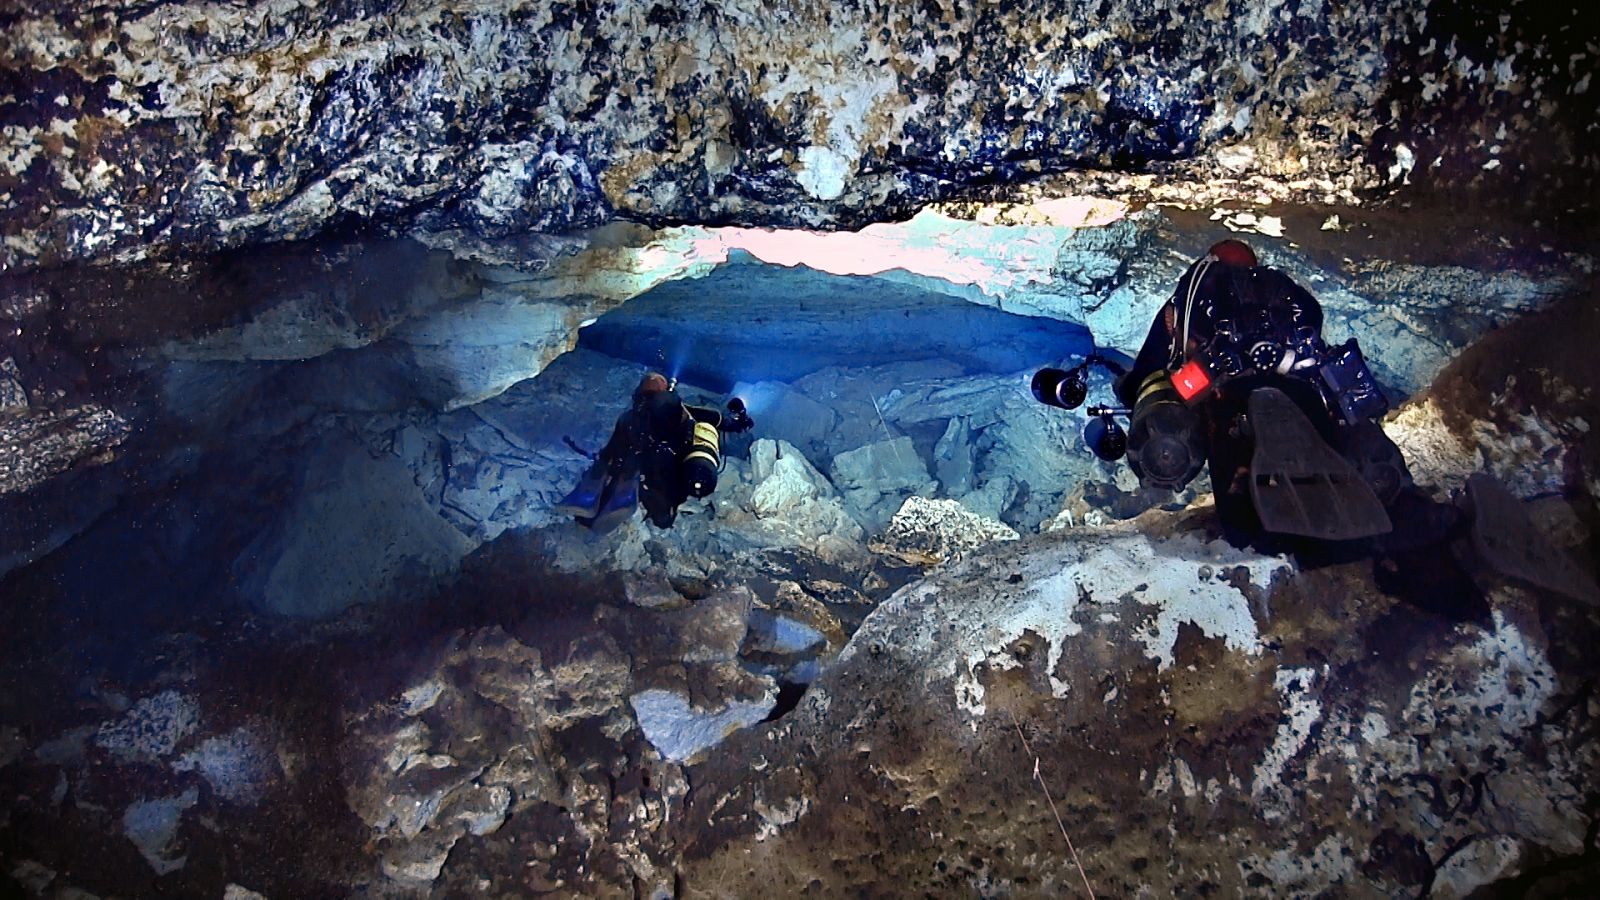 Una actividad de enorme riesgo, pero también de enorme belleza, como es el buceo en cuevas sumergidas